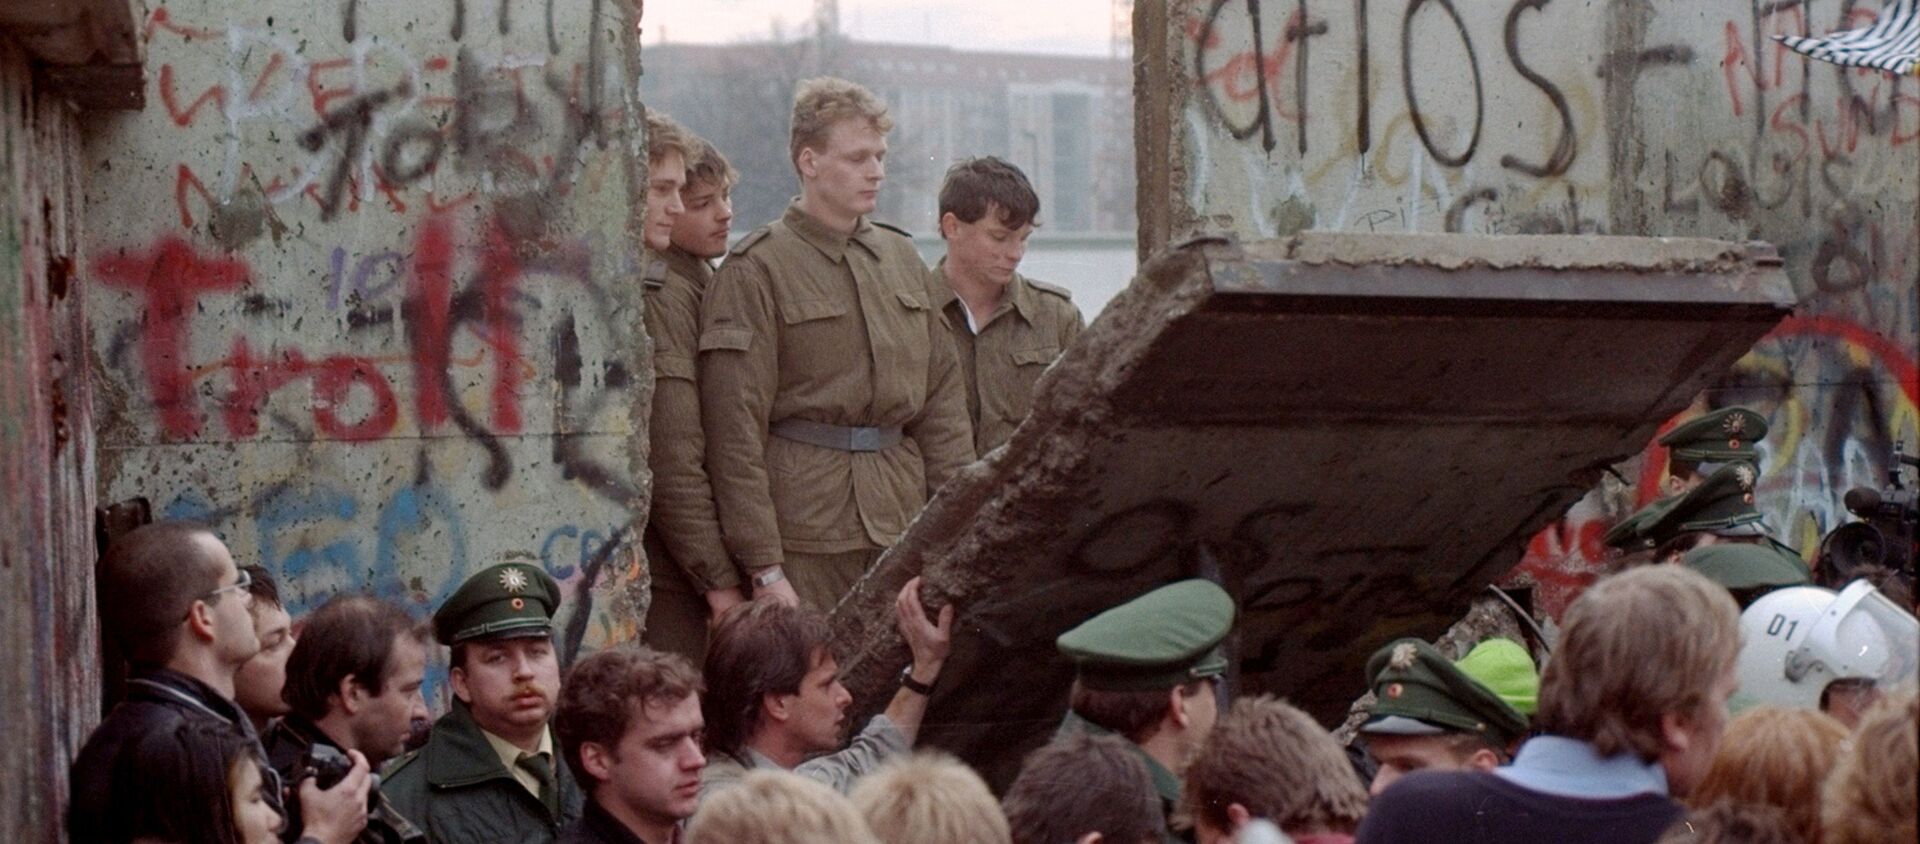 Guardias fronterizos de Alemania Oriental aparecen tras el muro de Berlín después que los manifestantes derribaron un segmento  - Sputnik Mundo, 1920, 08.11.2019